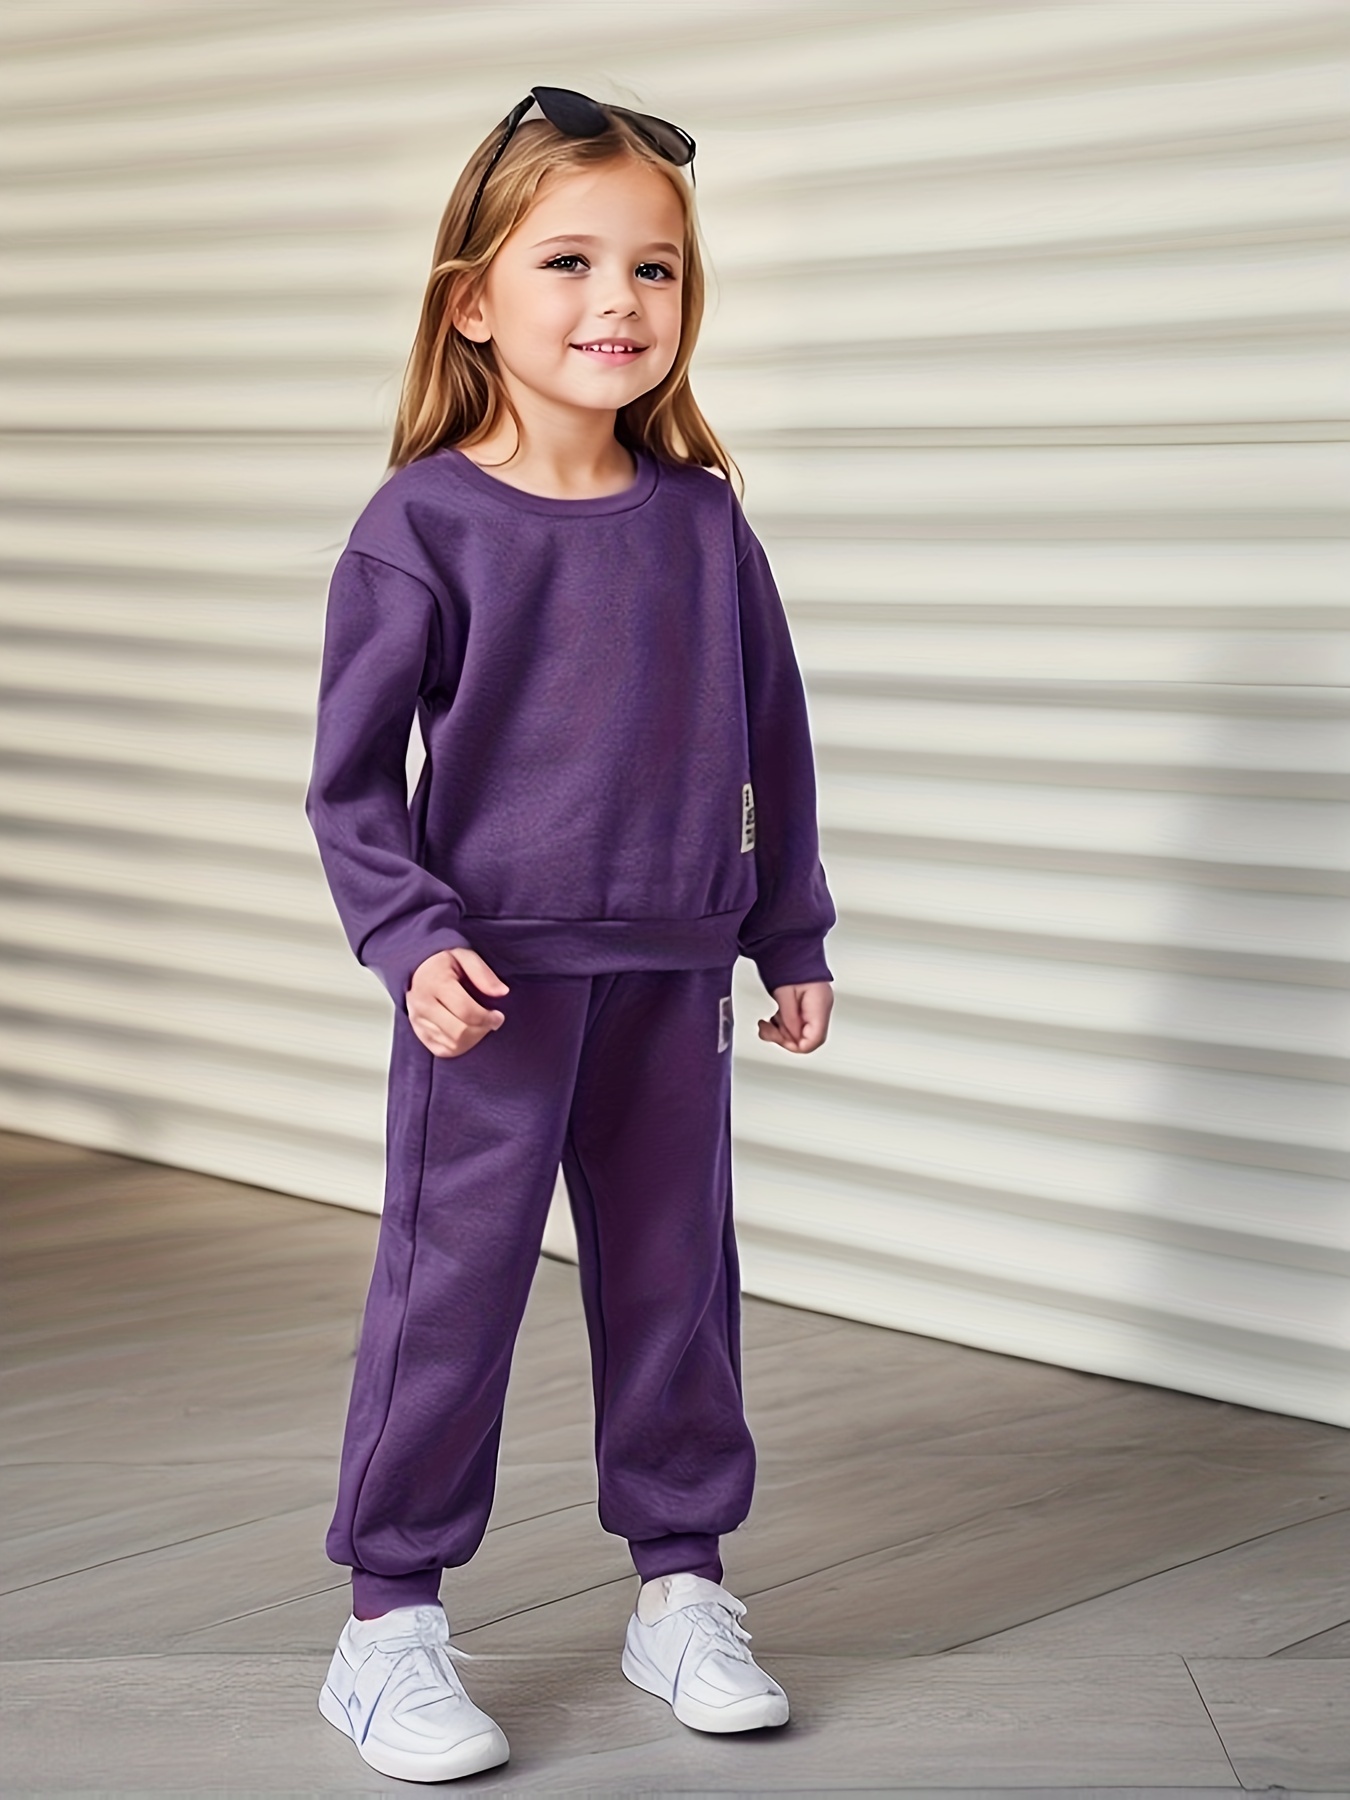 Traje de ropa de bebé niña de 1 año - Tops y pantalones para niñas